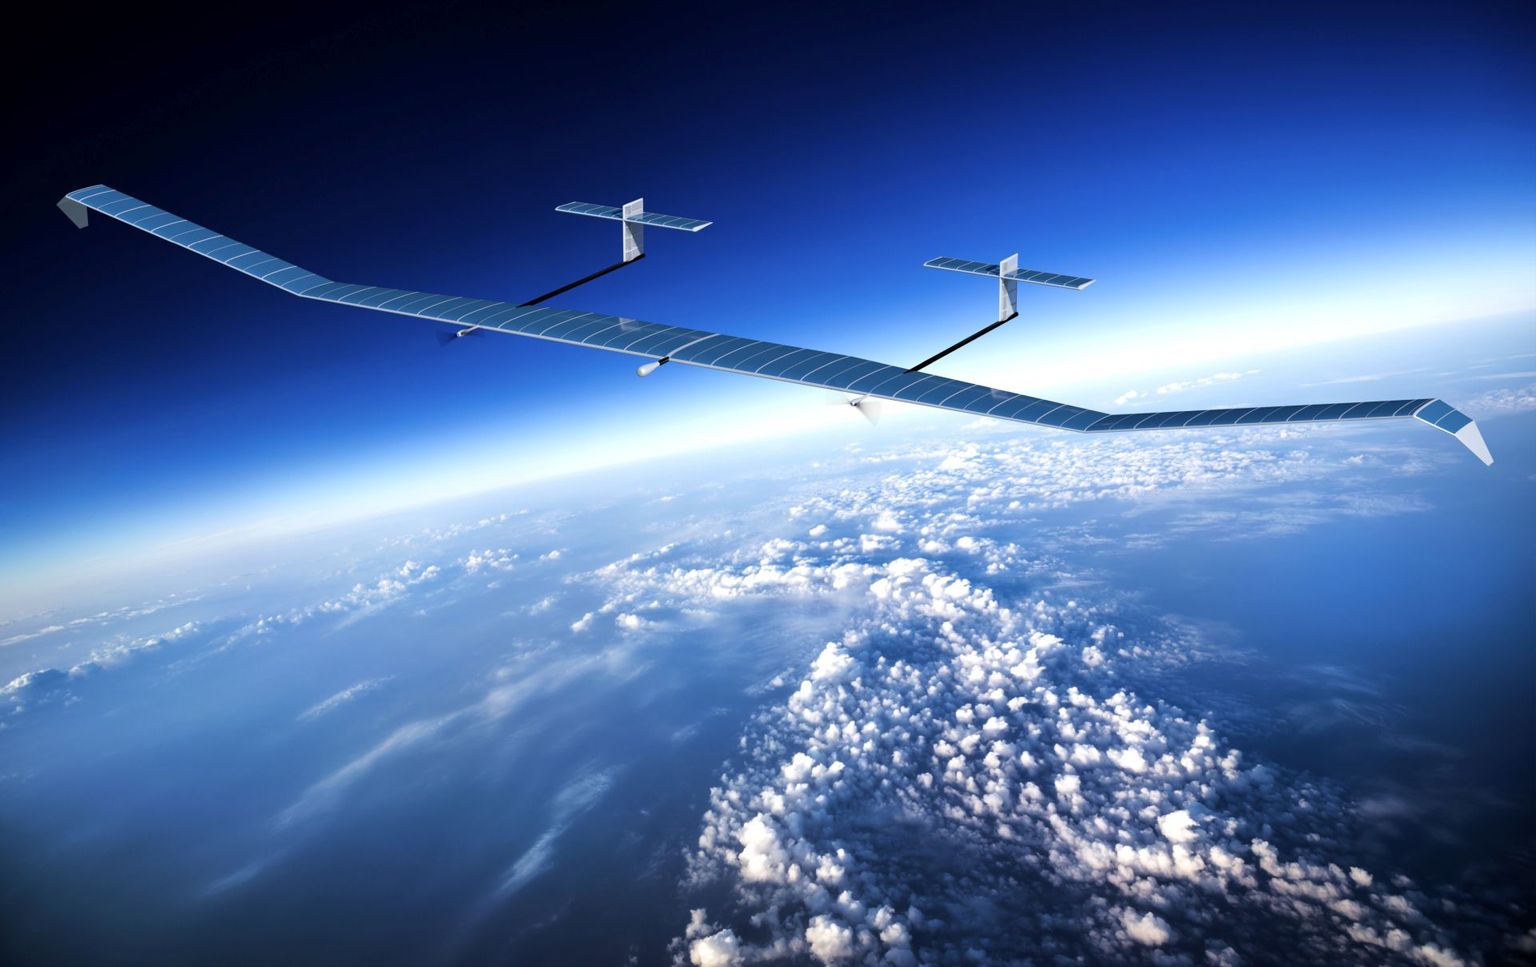 Zephyr S tüüpi lennukeid kutsutakse pseudosatelliitideks - need saadetakse lendama ja masinad võivad õhku jäädagi just nii kauaks, kui vaja. Energiat annavad ööpäevaringselt päikesepaneelid ja akud.